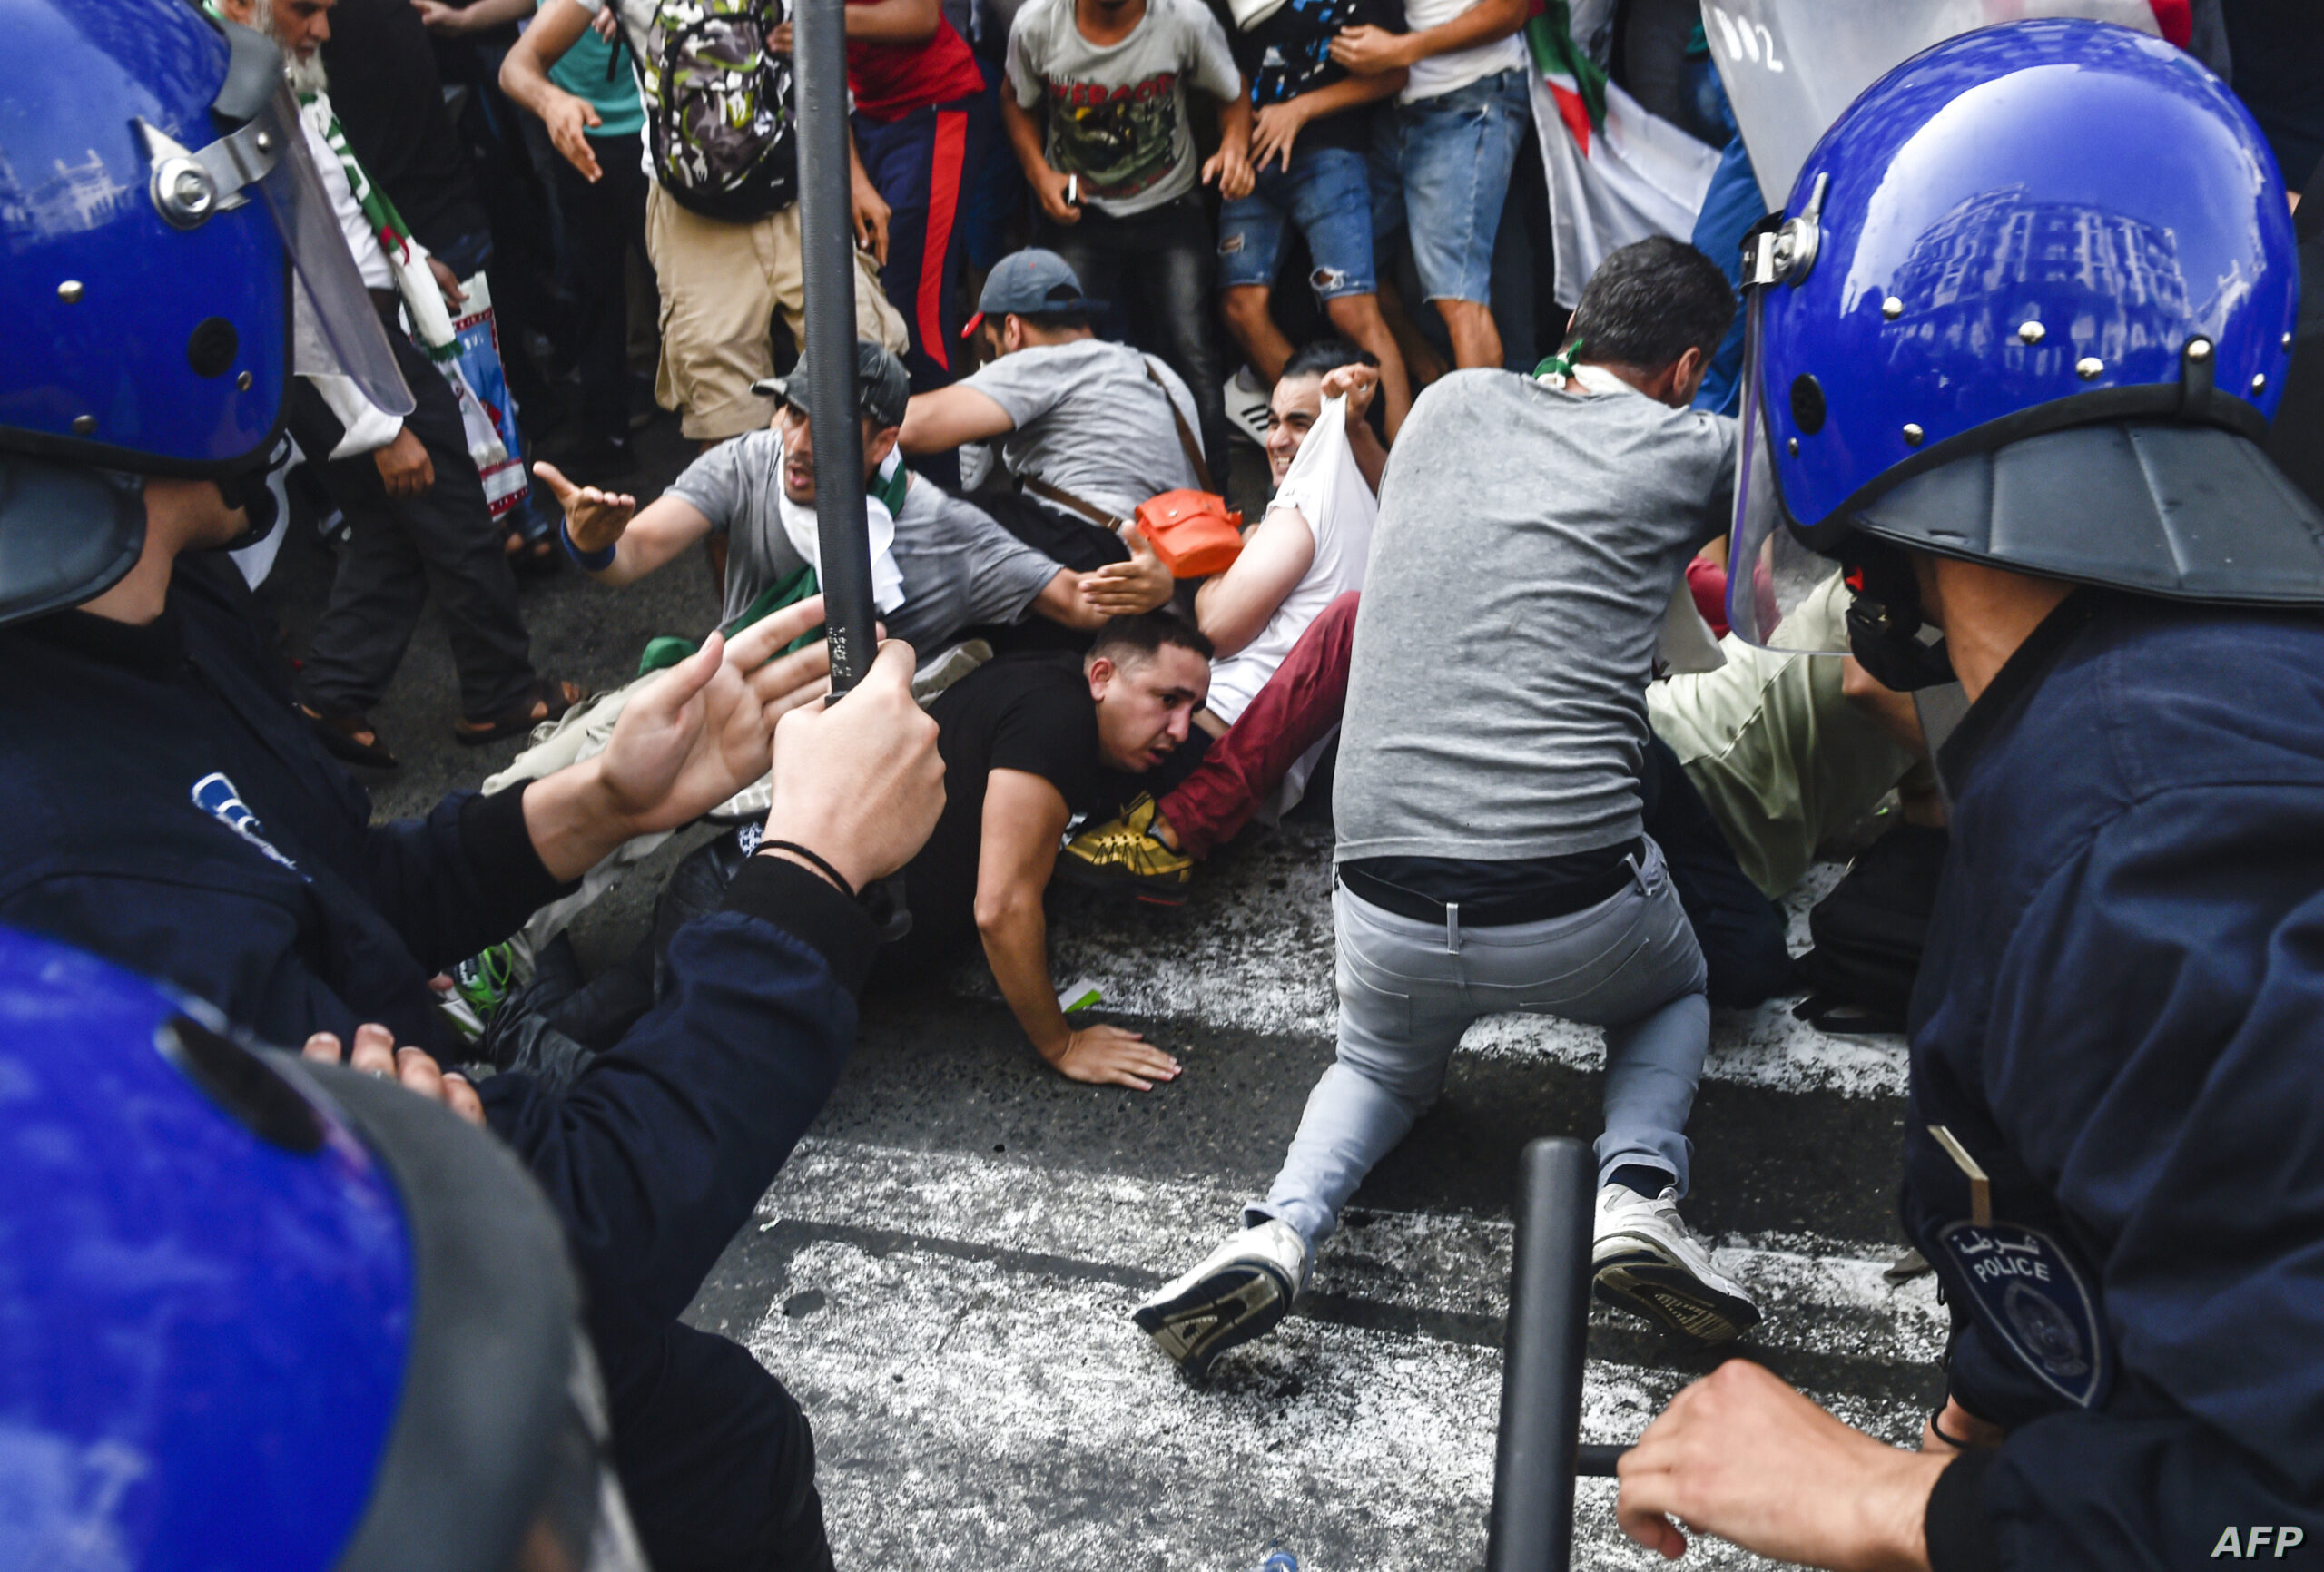 صحيفة إيطالية: حقوقيون يطلقون “صرخة إنذار” في مواجهة “القمع المتزايد” للحراك بالجزائر